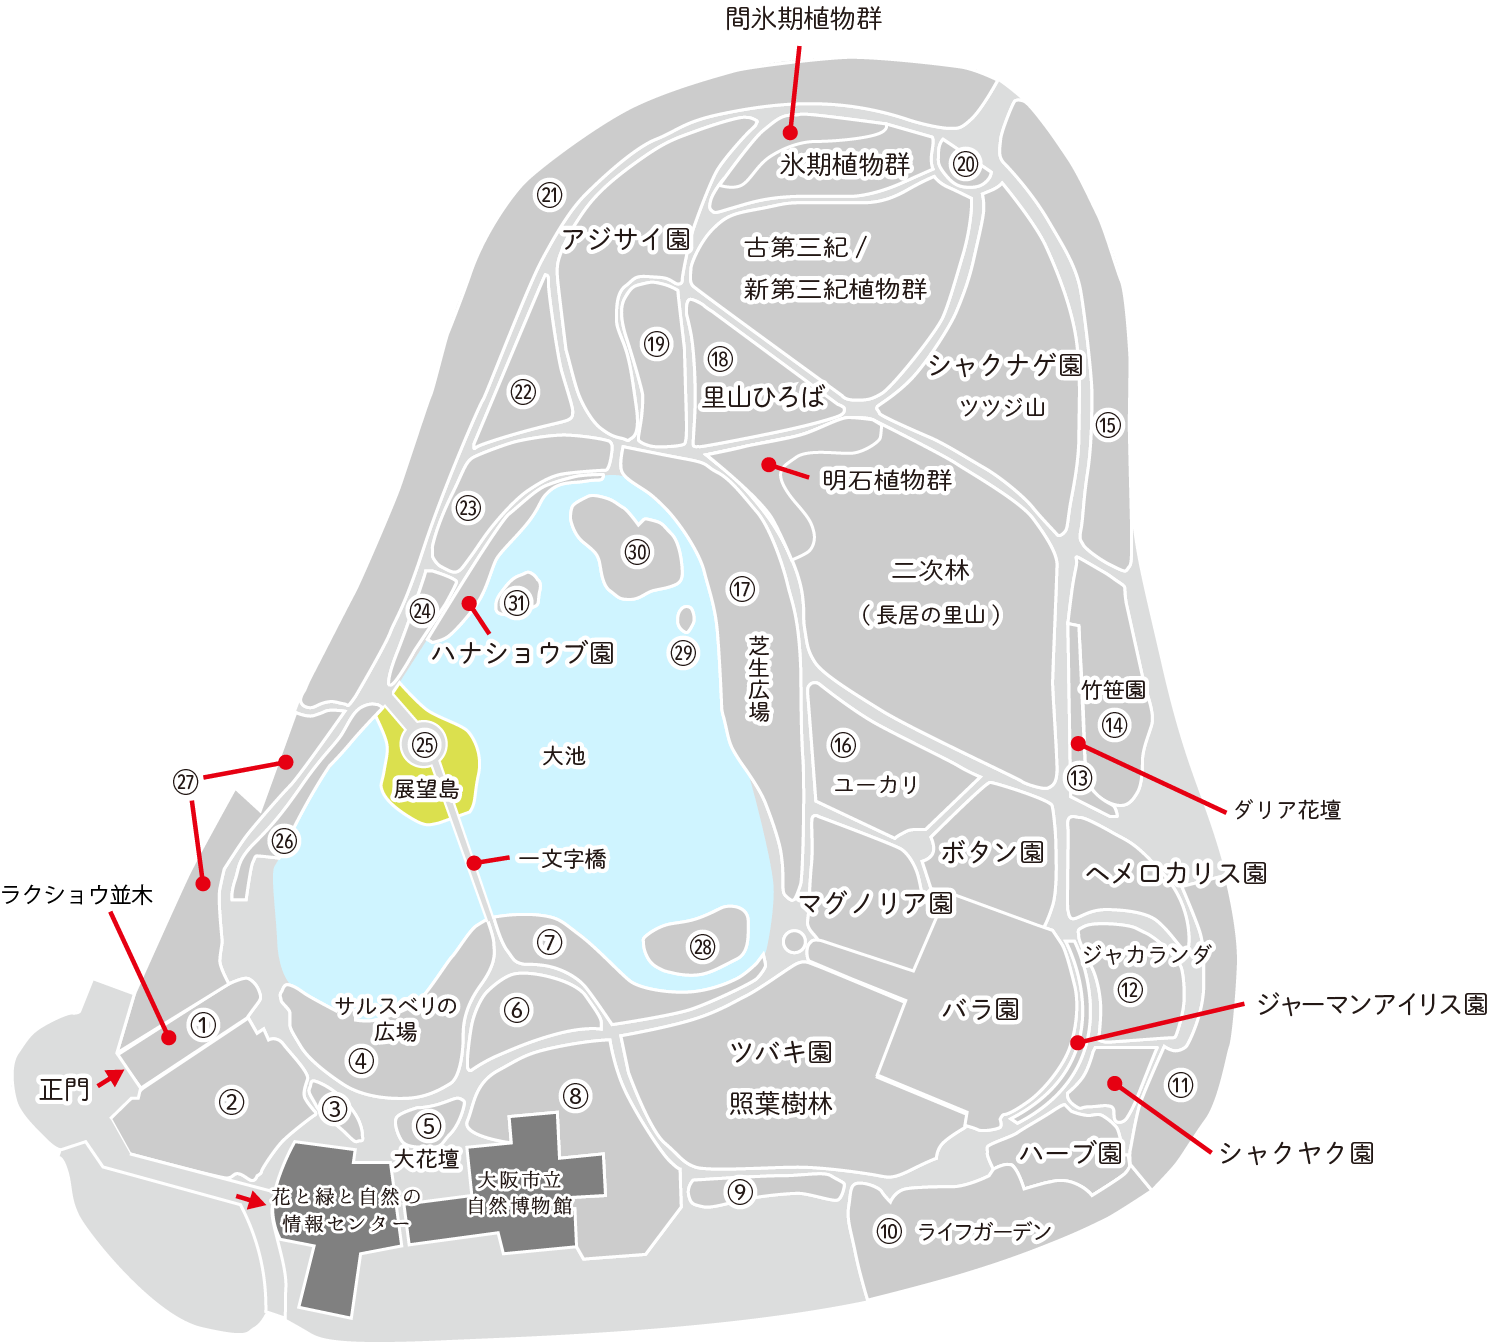 ソメイヨシノが見れる場所　㉕展望島